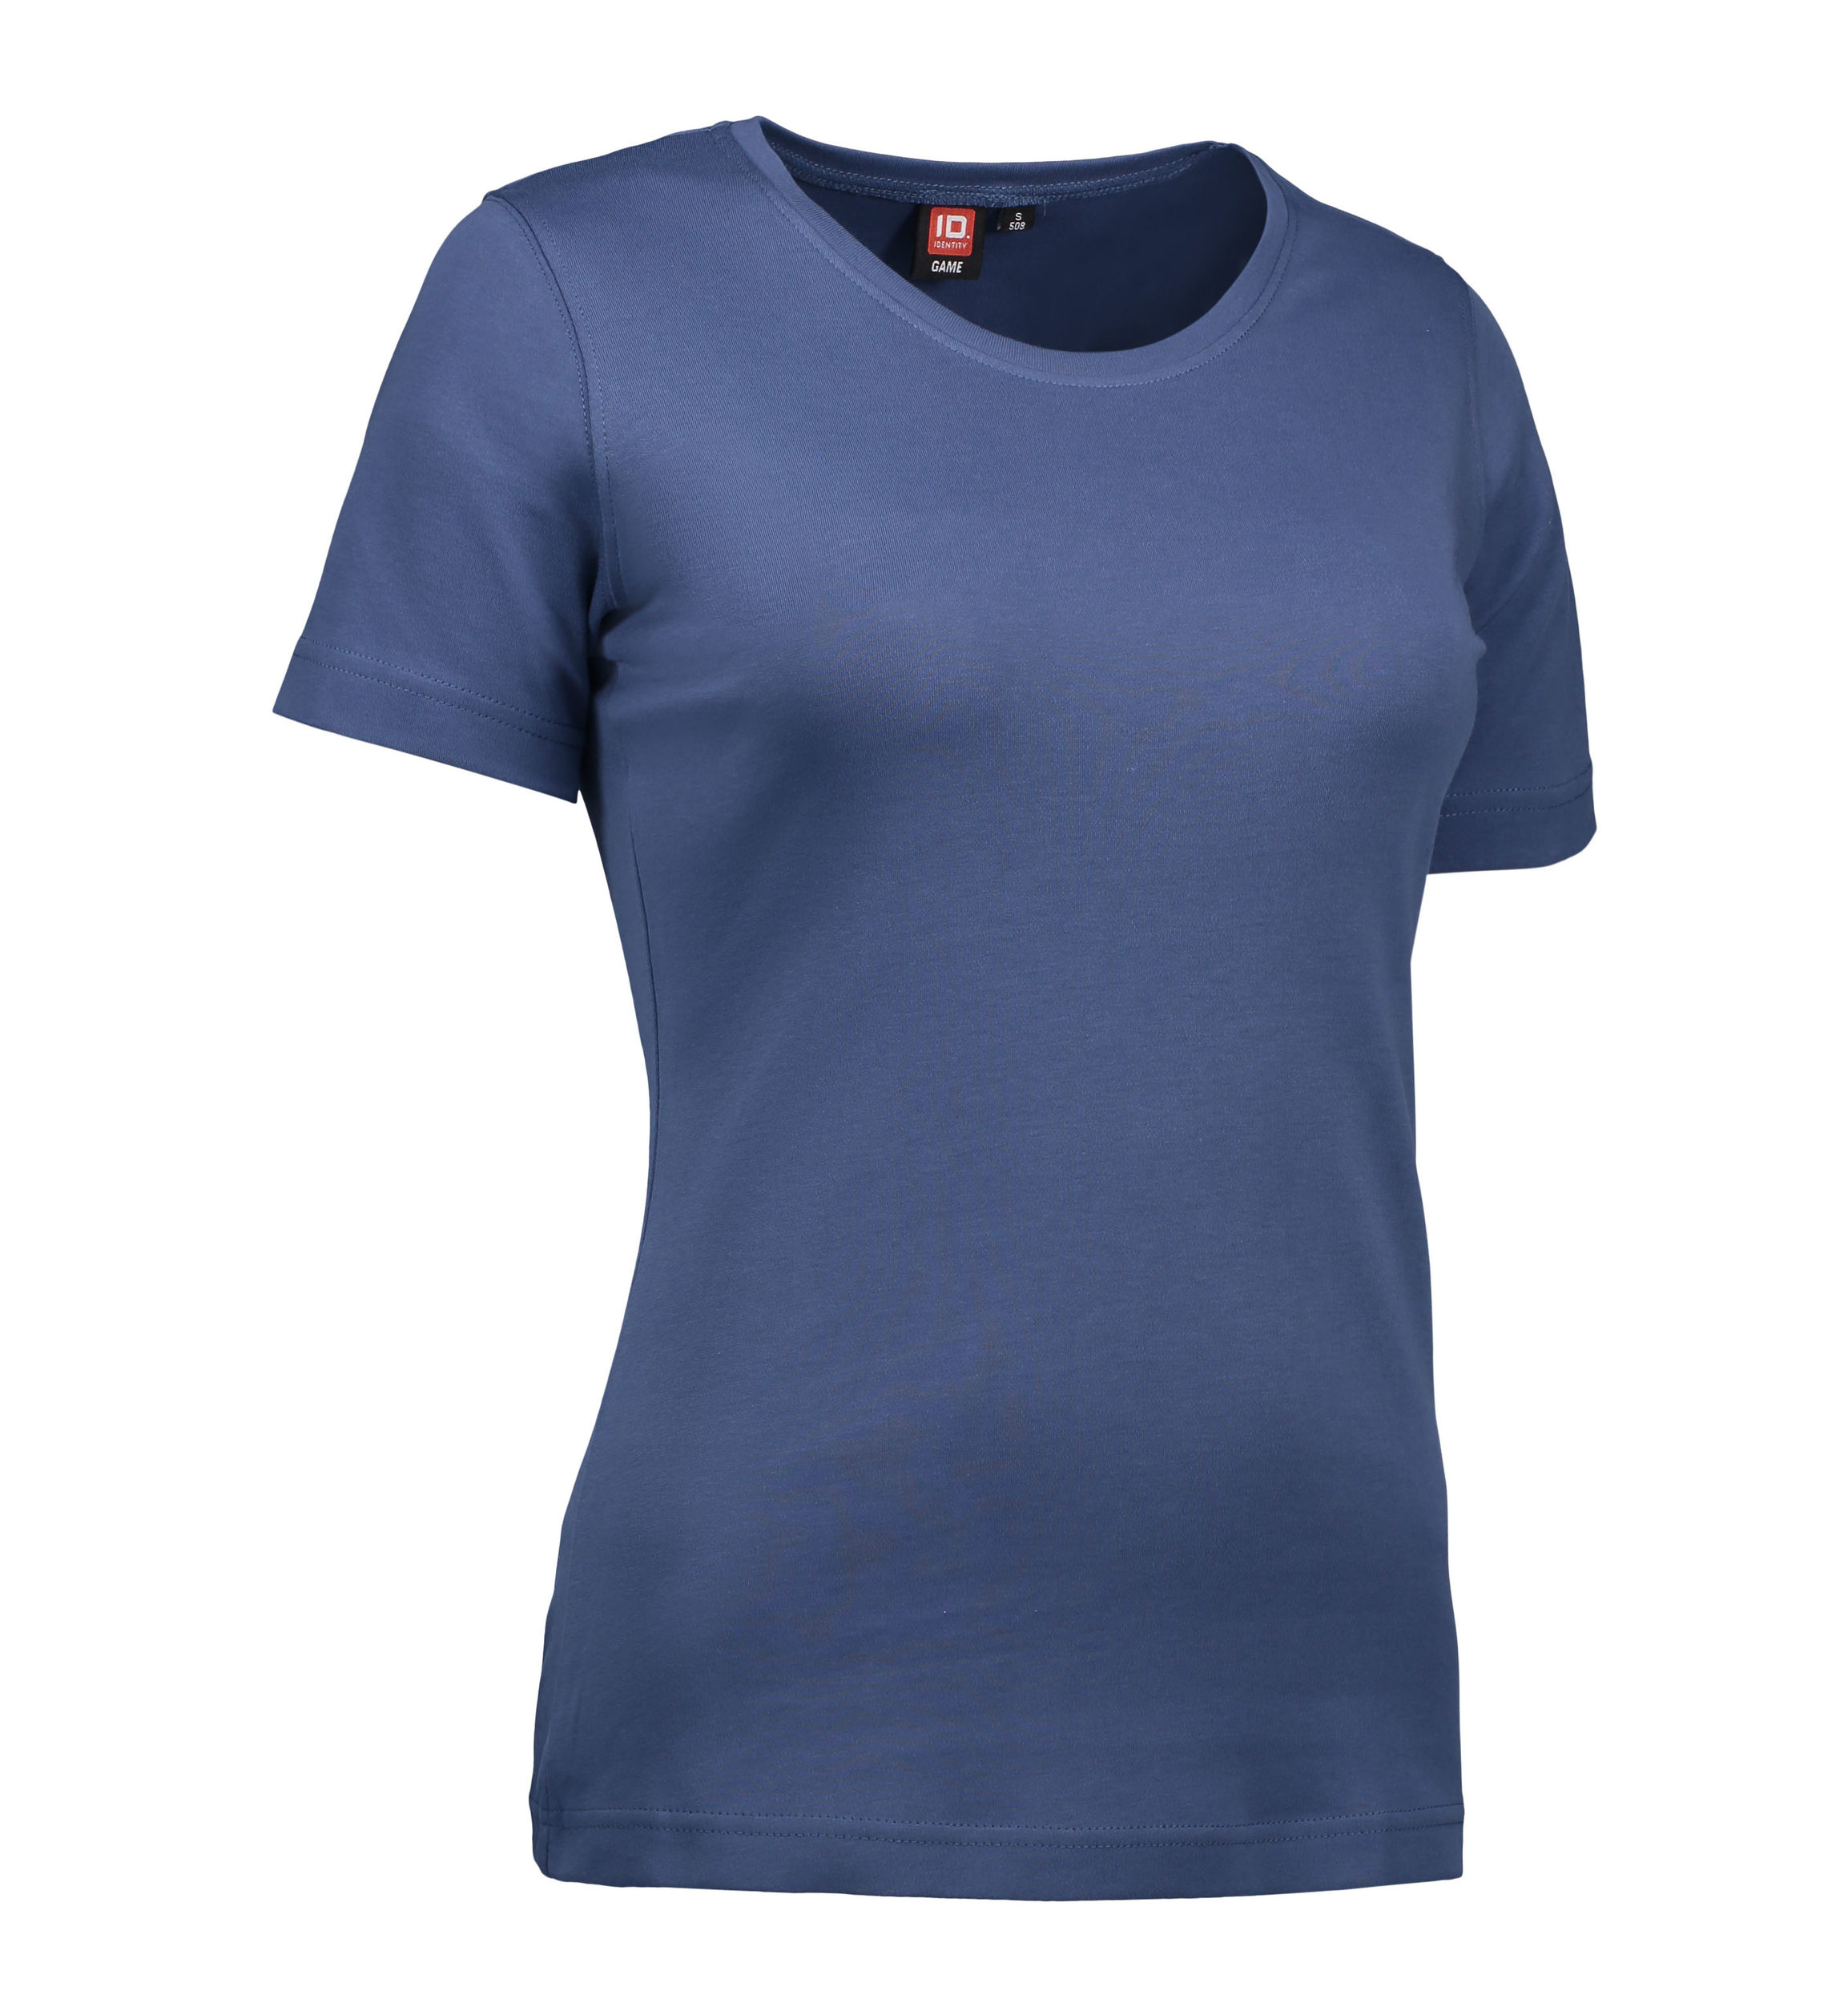 Billede af Indigo farvet t-shirt med rund hals til damer - XL hos Sygeplejebutikken.dk